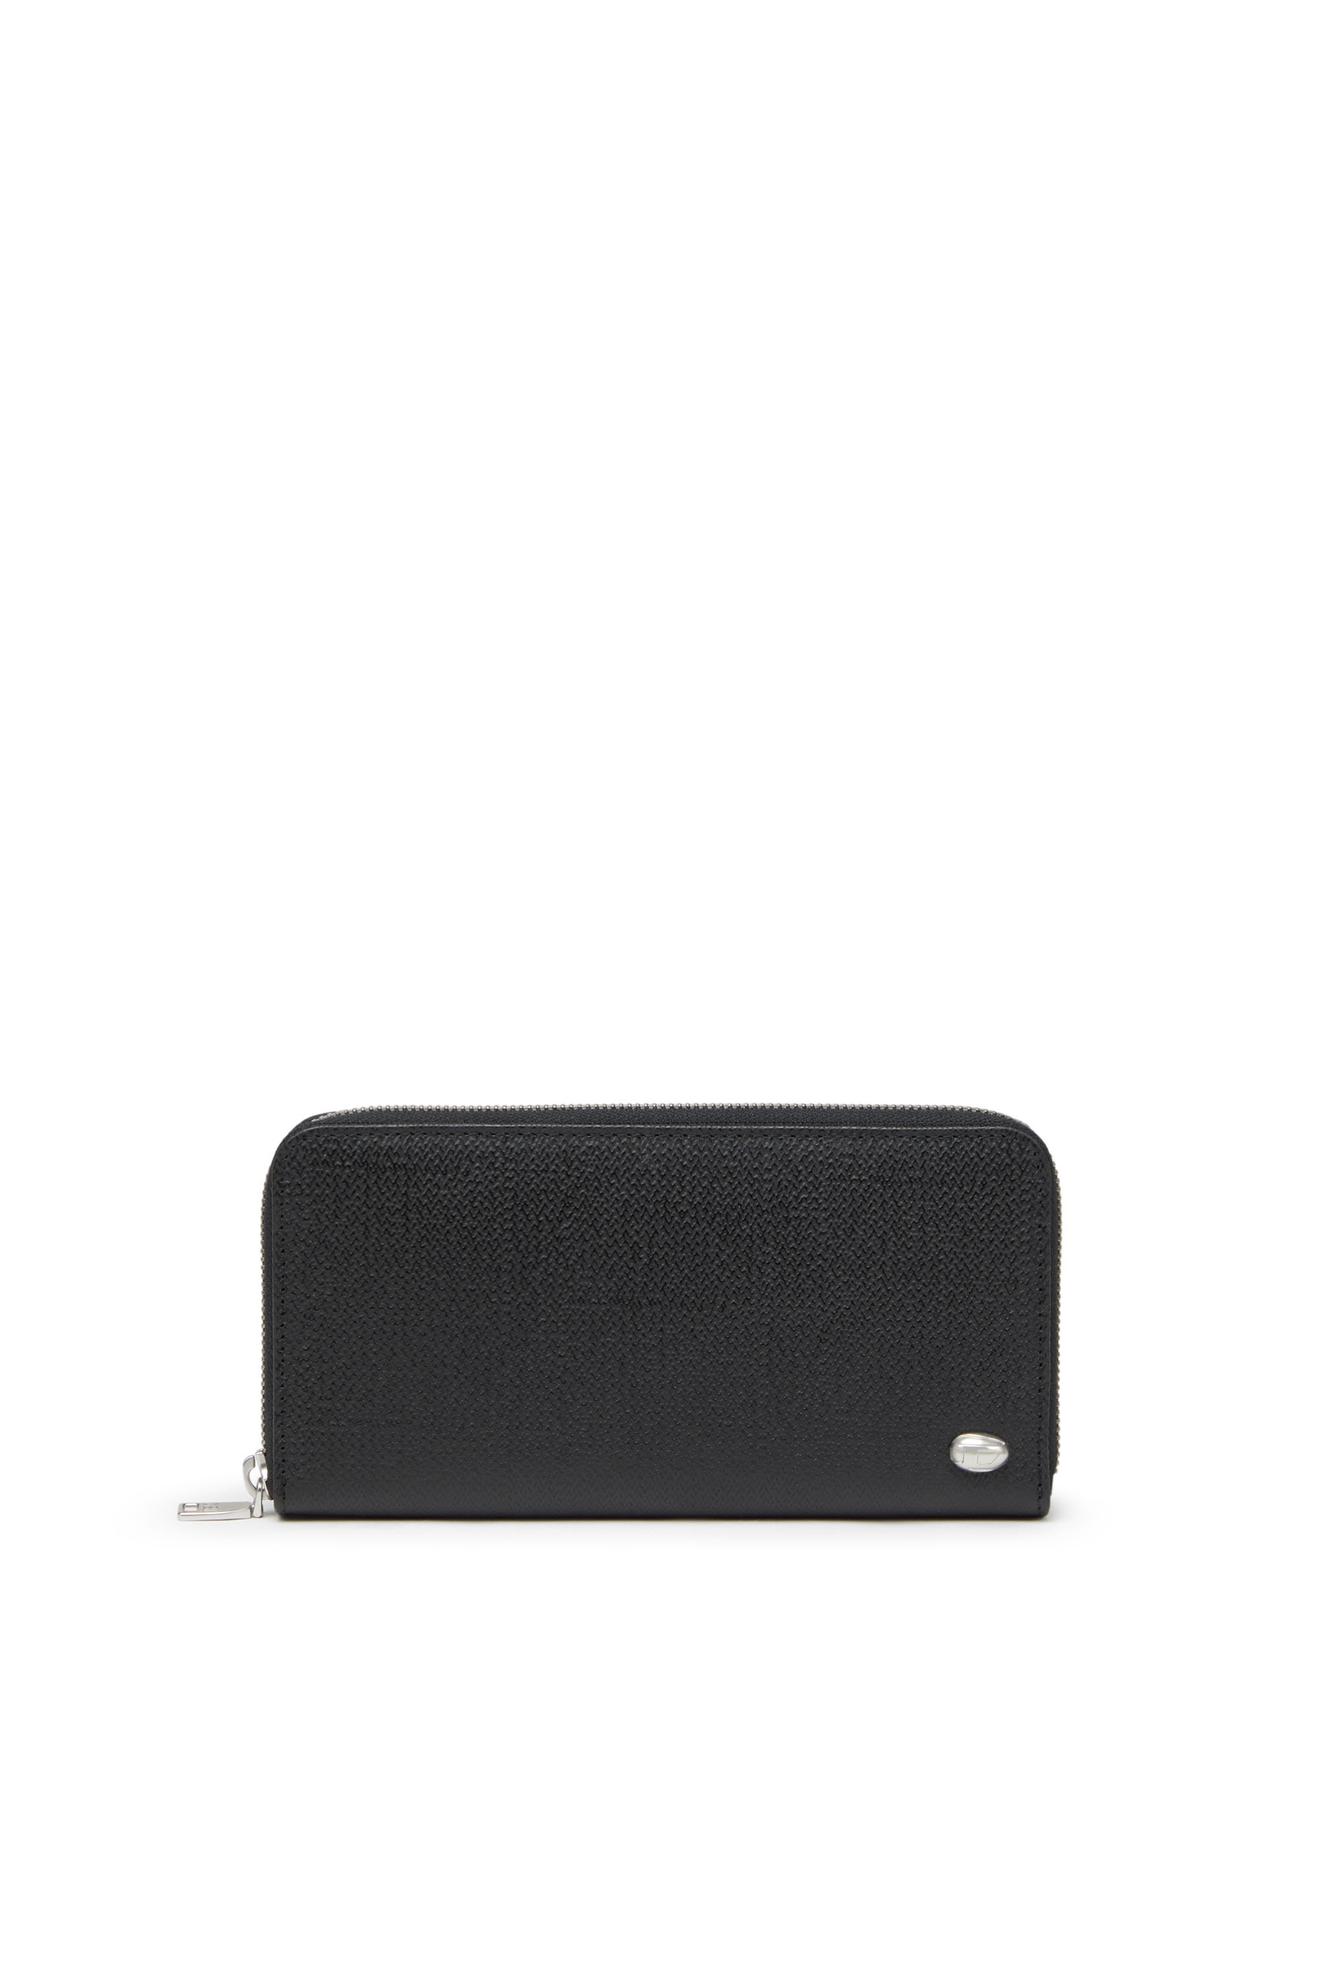 Aanbieding van Long zip wallet in textured leather voor 112€ bij Diesel